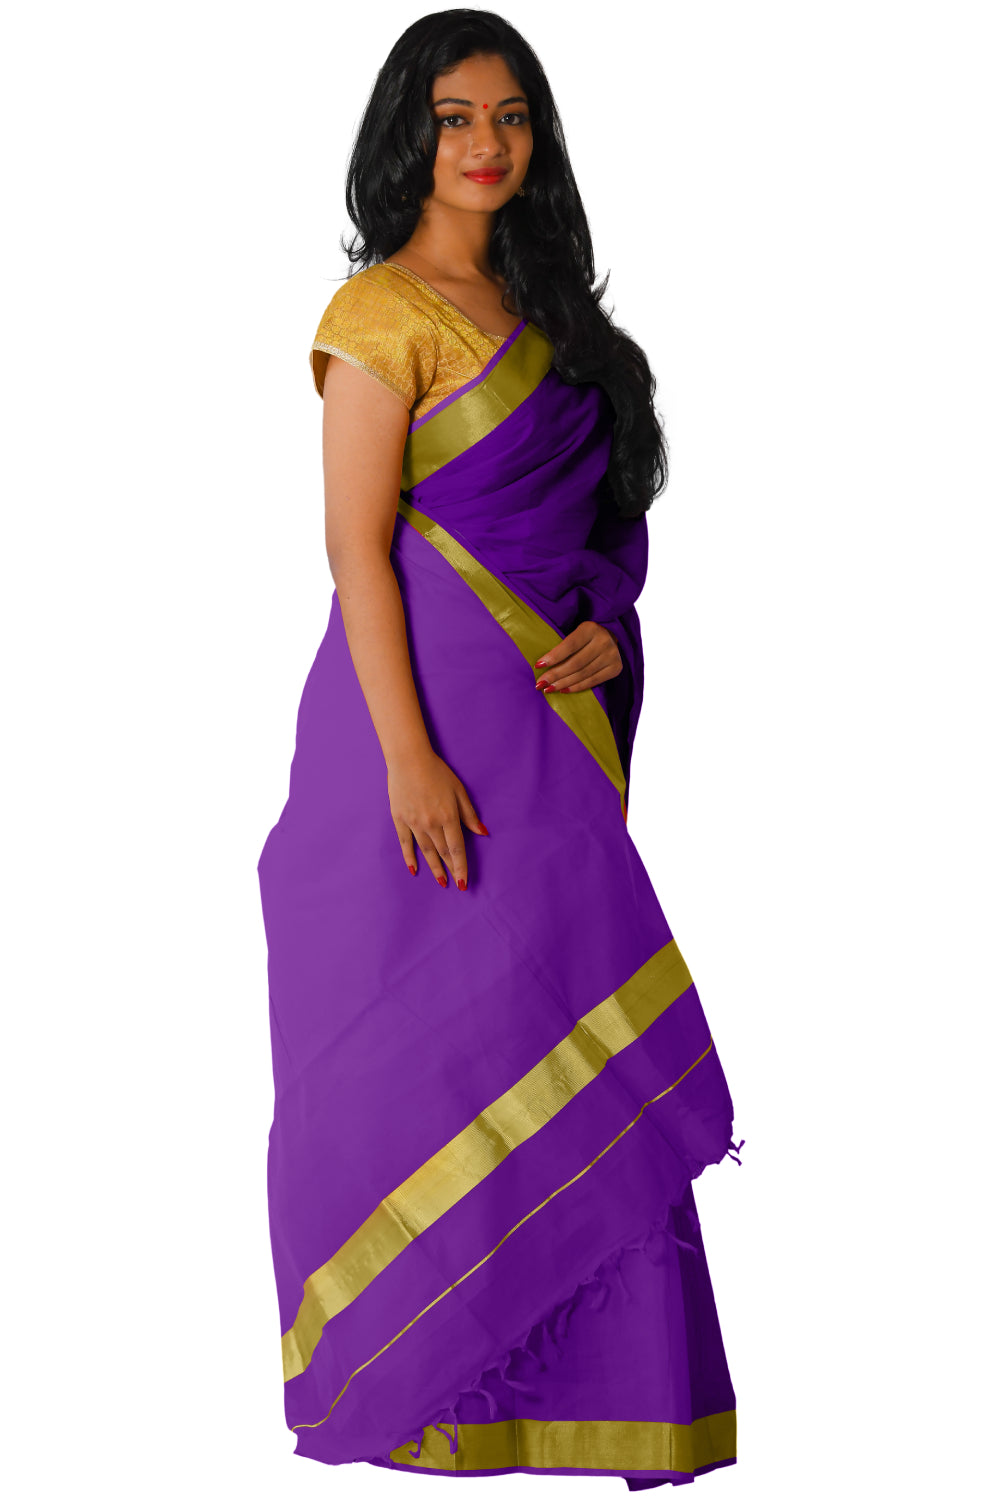 Kerala Traditional Violet Colour Kasavu Saree